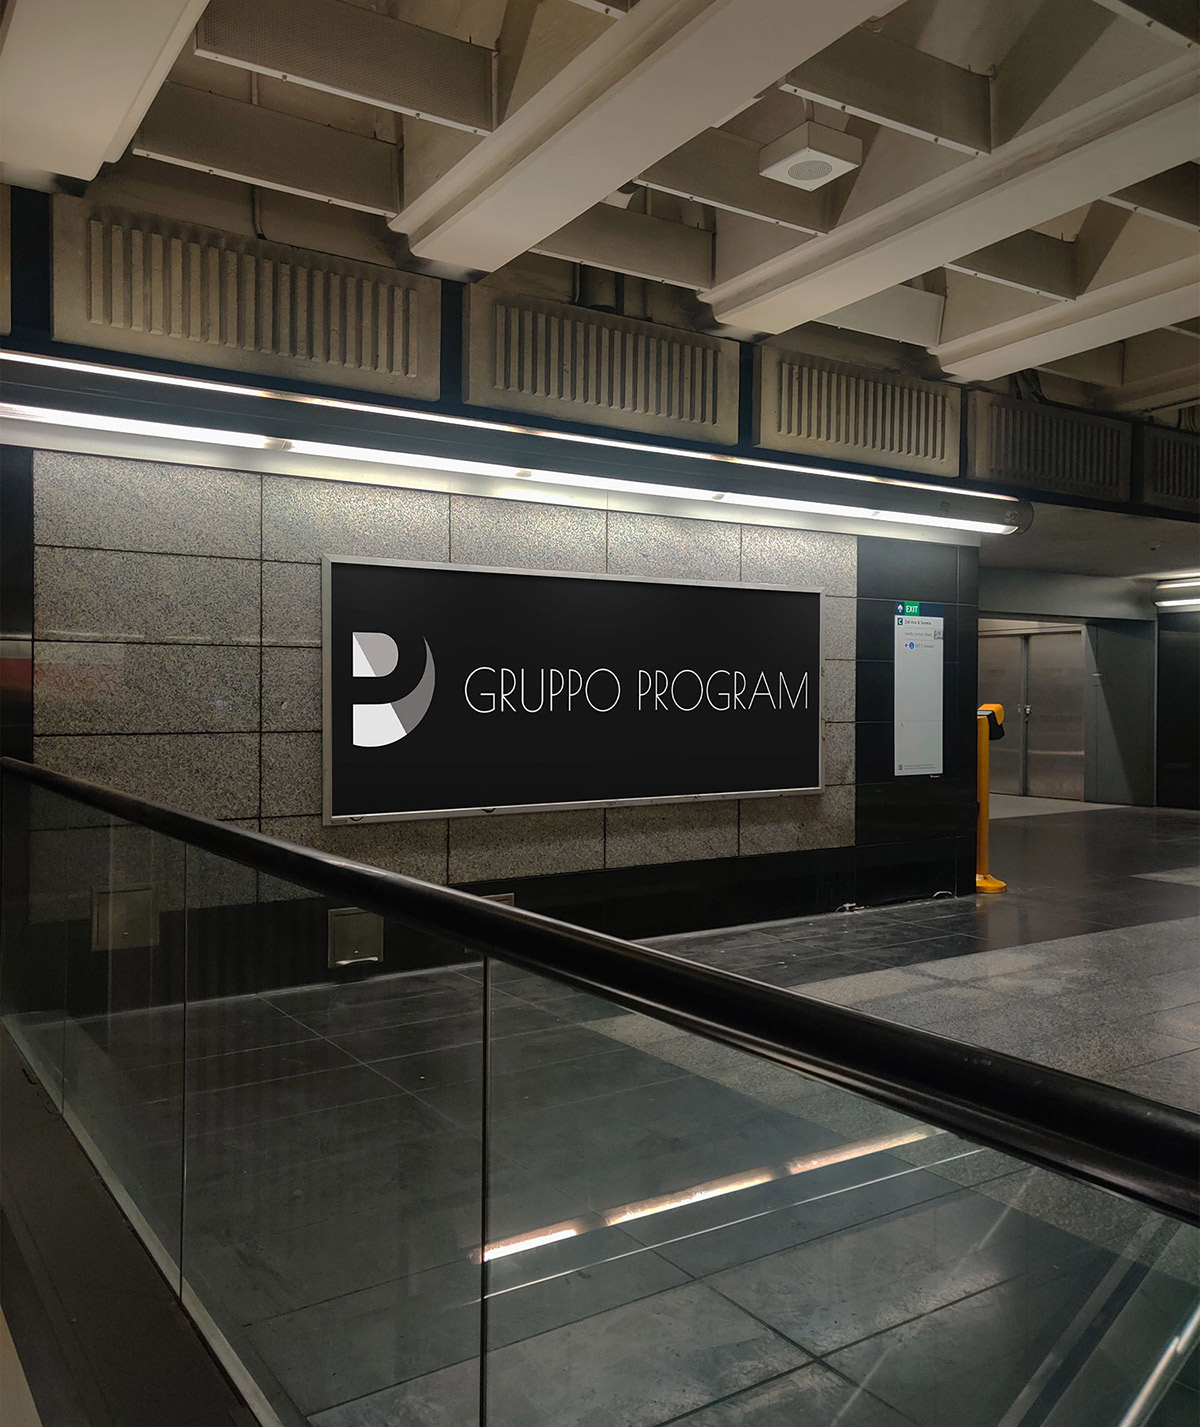 affissione in una metropolitana con logo Gruppo Program